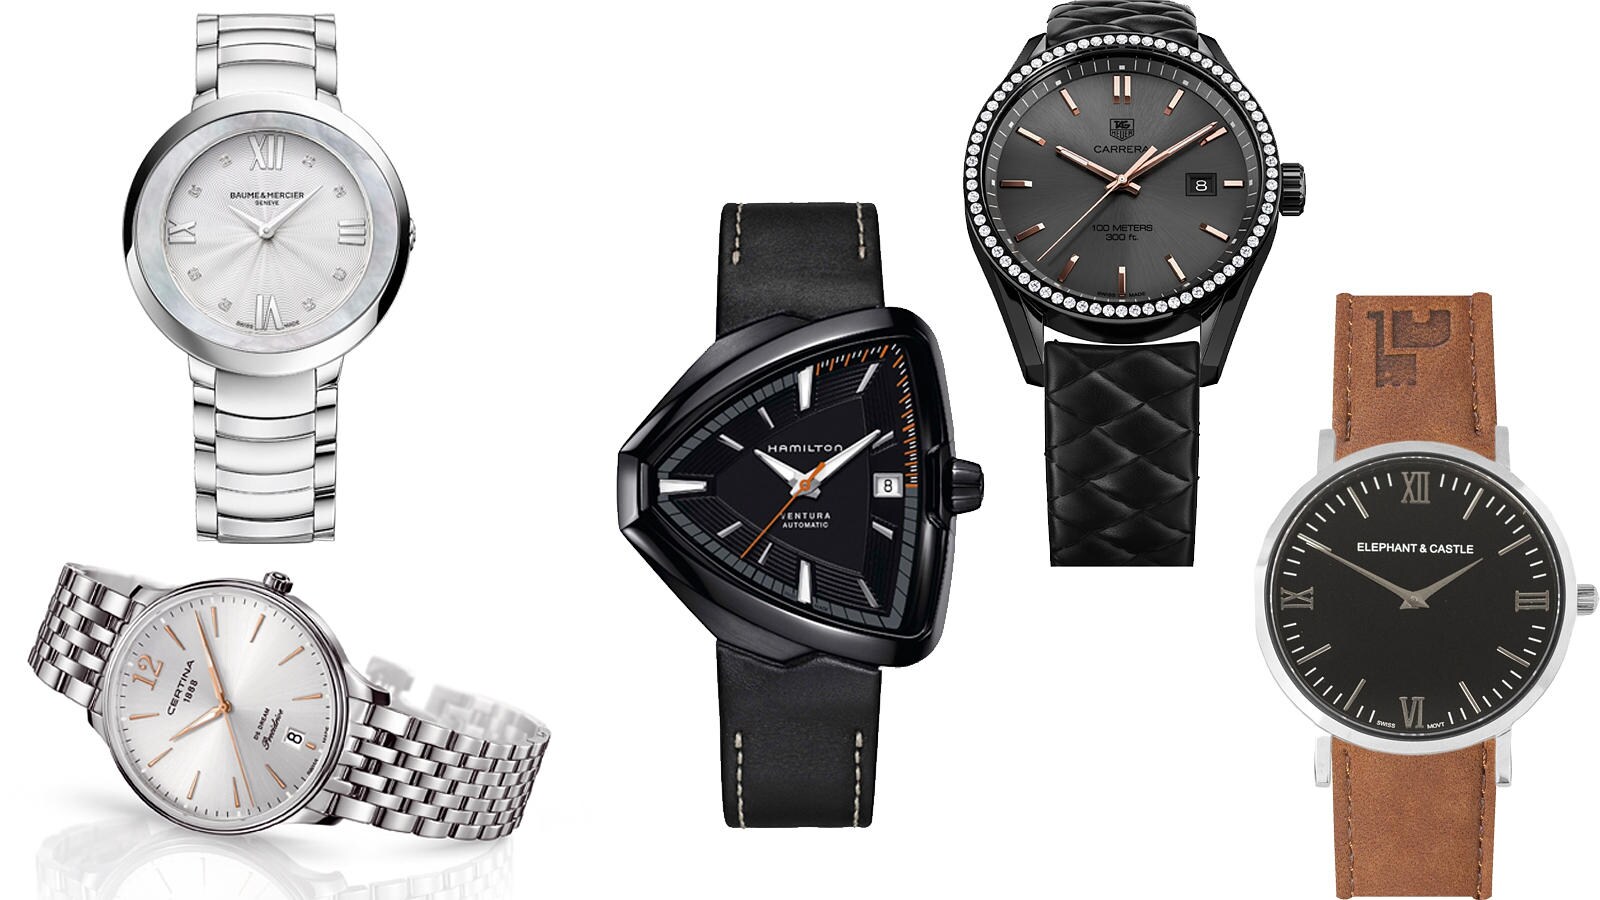 Un buen reloj puede decir mucho más del que lo lleva, y del que lo regala, que la hora... como estos modelos de Baume &amp; Mercier, Certina, Hamilton, Tag Heuer o Elephant &amp; Castle